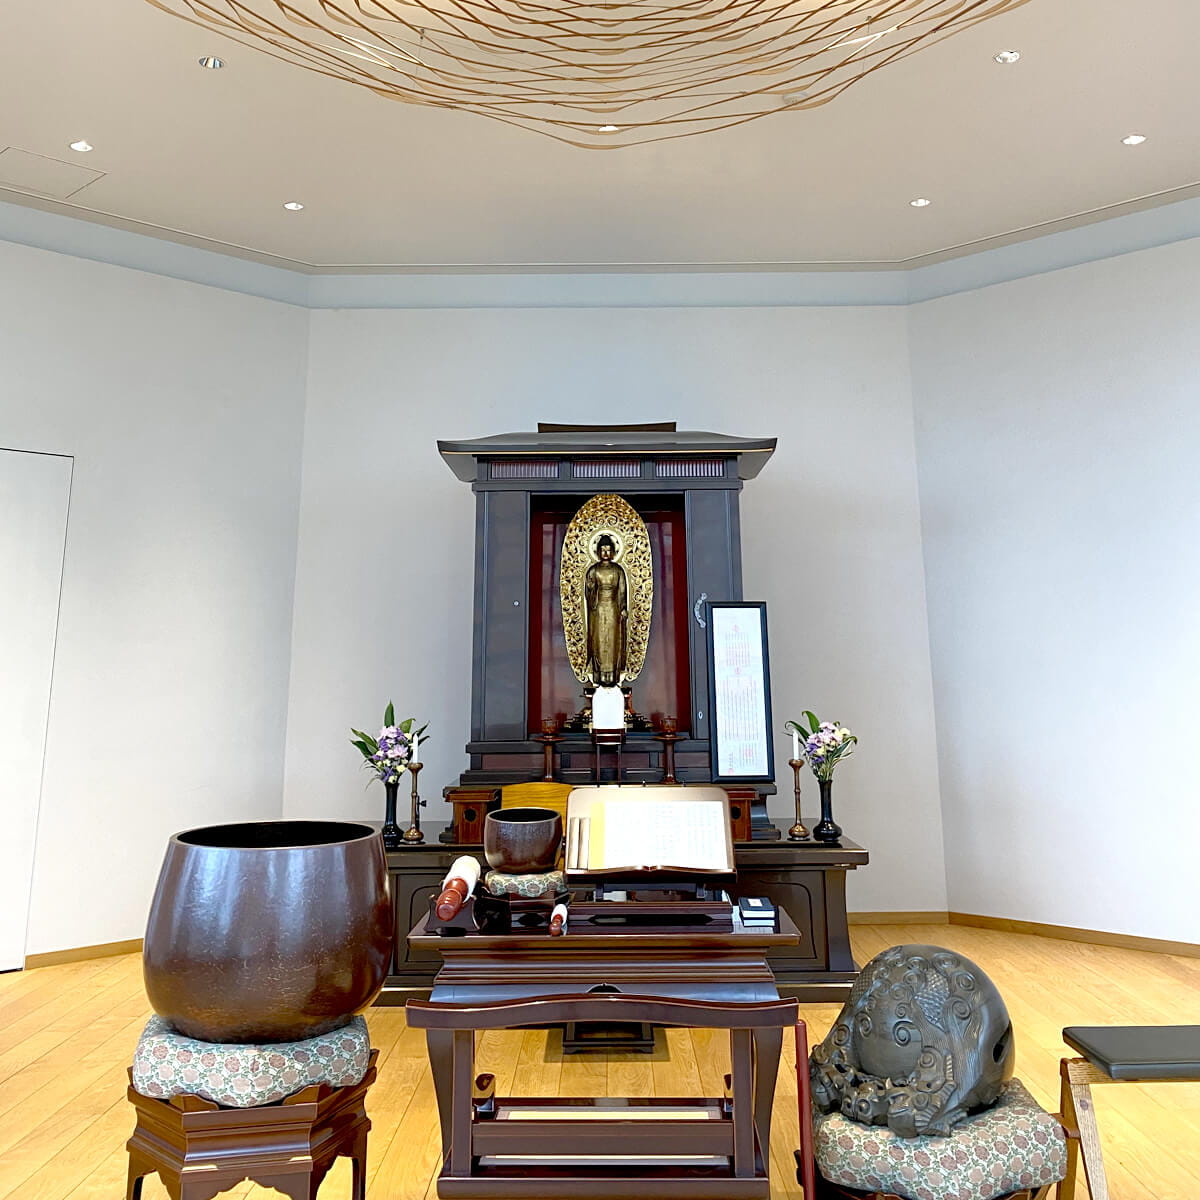 明るい室内の祭壇には金色の仏像が中央に安置されており、周囲には花瓶と供物が飾られている